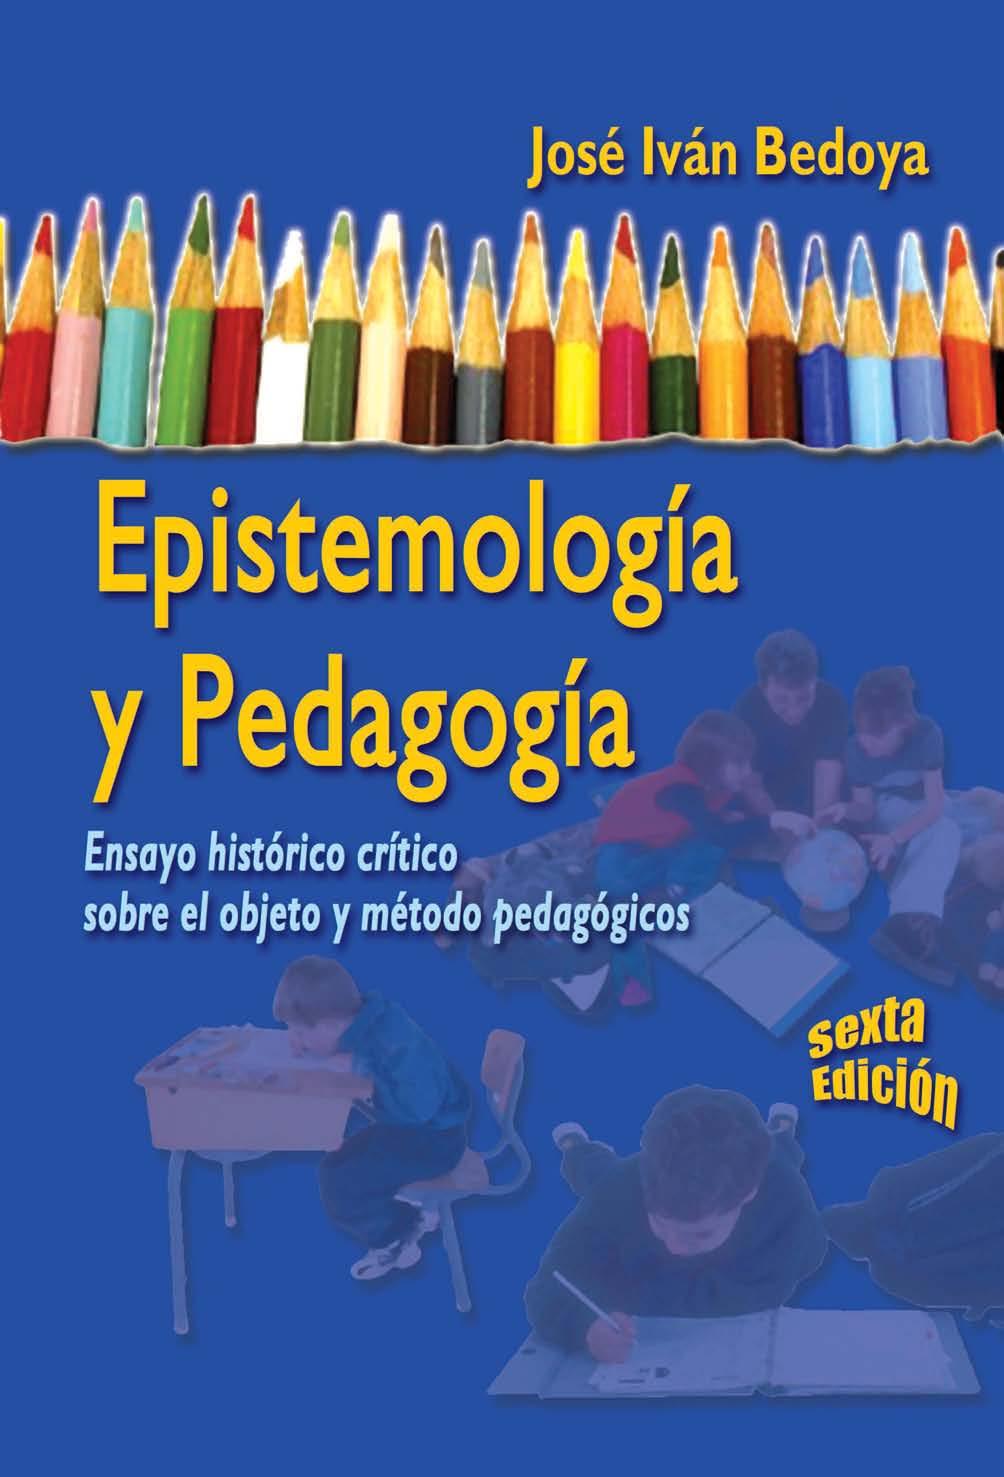 Descargar Libro Epistemologia Y Pedagogia Jose Ivan Bedoya